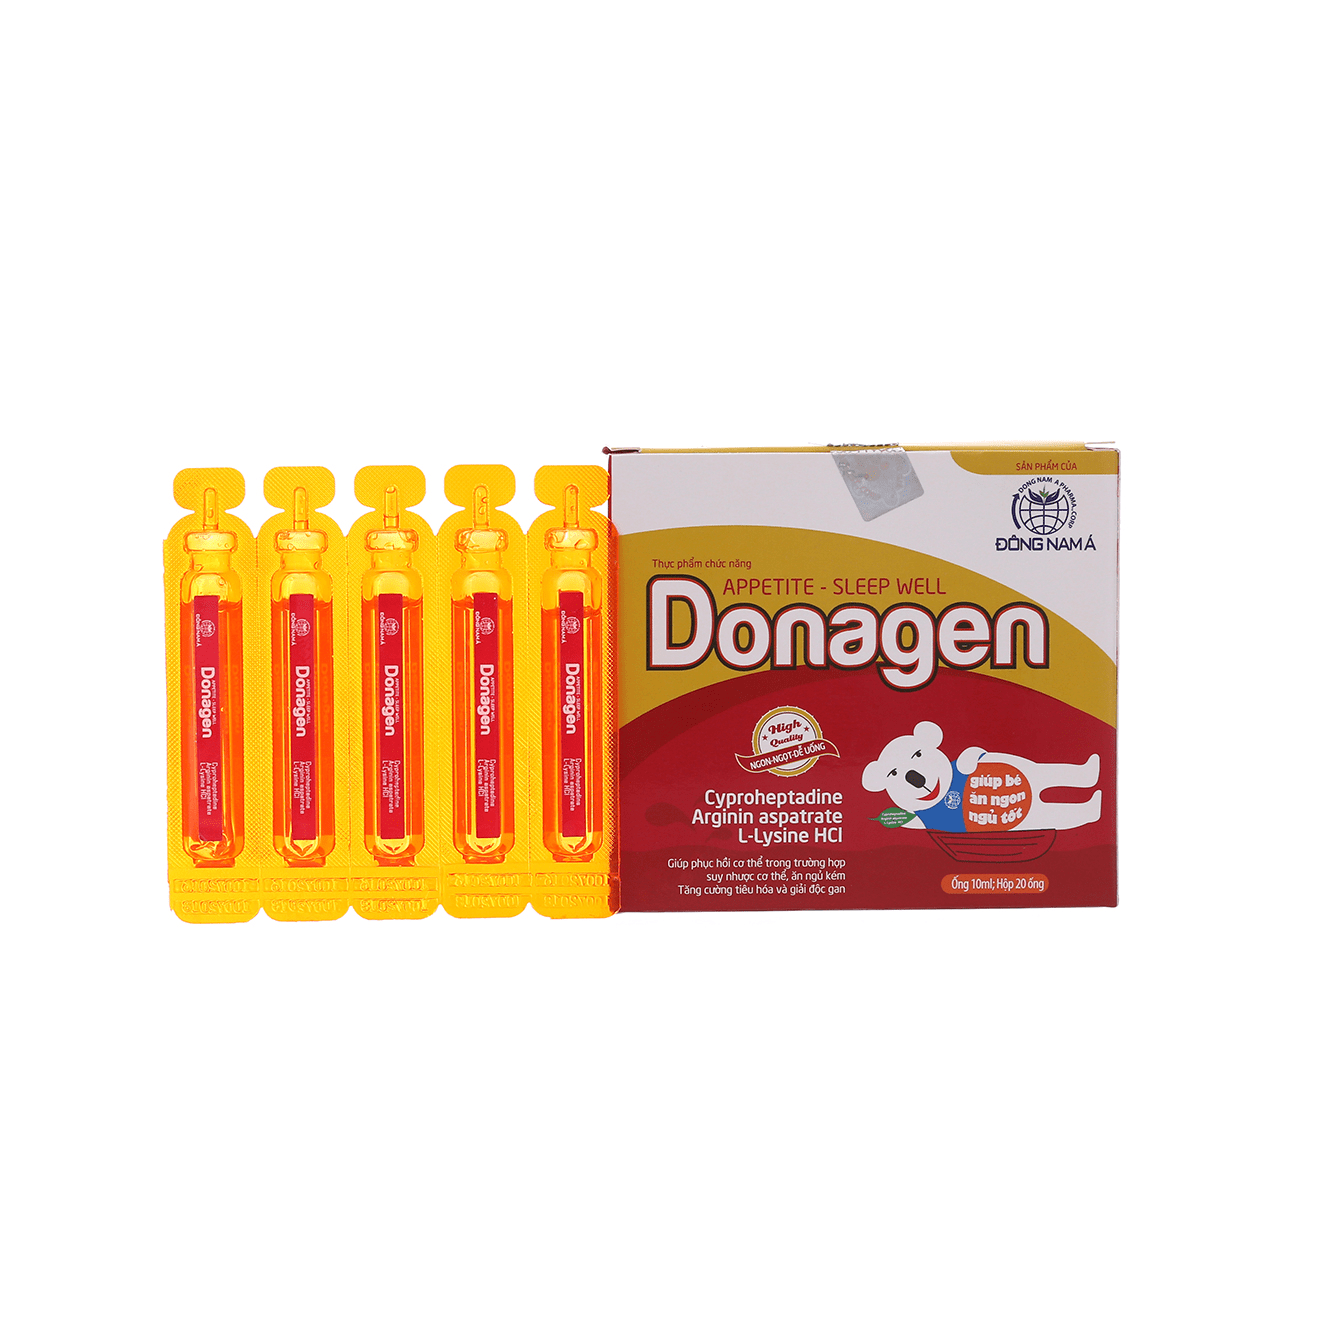 Donagen gold – thực phẩm chức năng dạng uống cho bé 